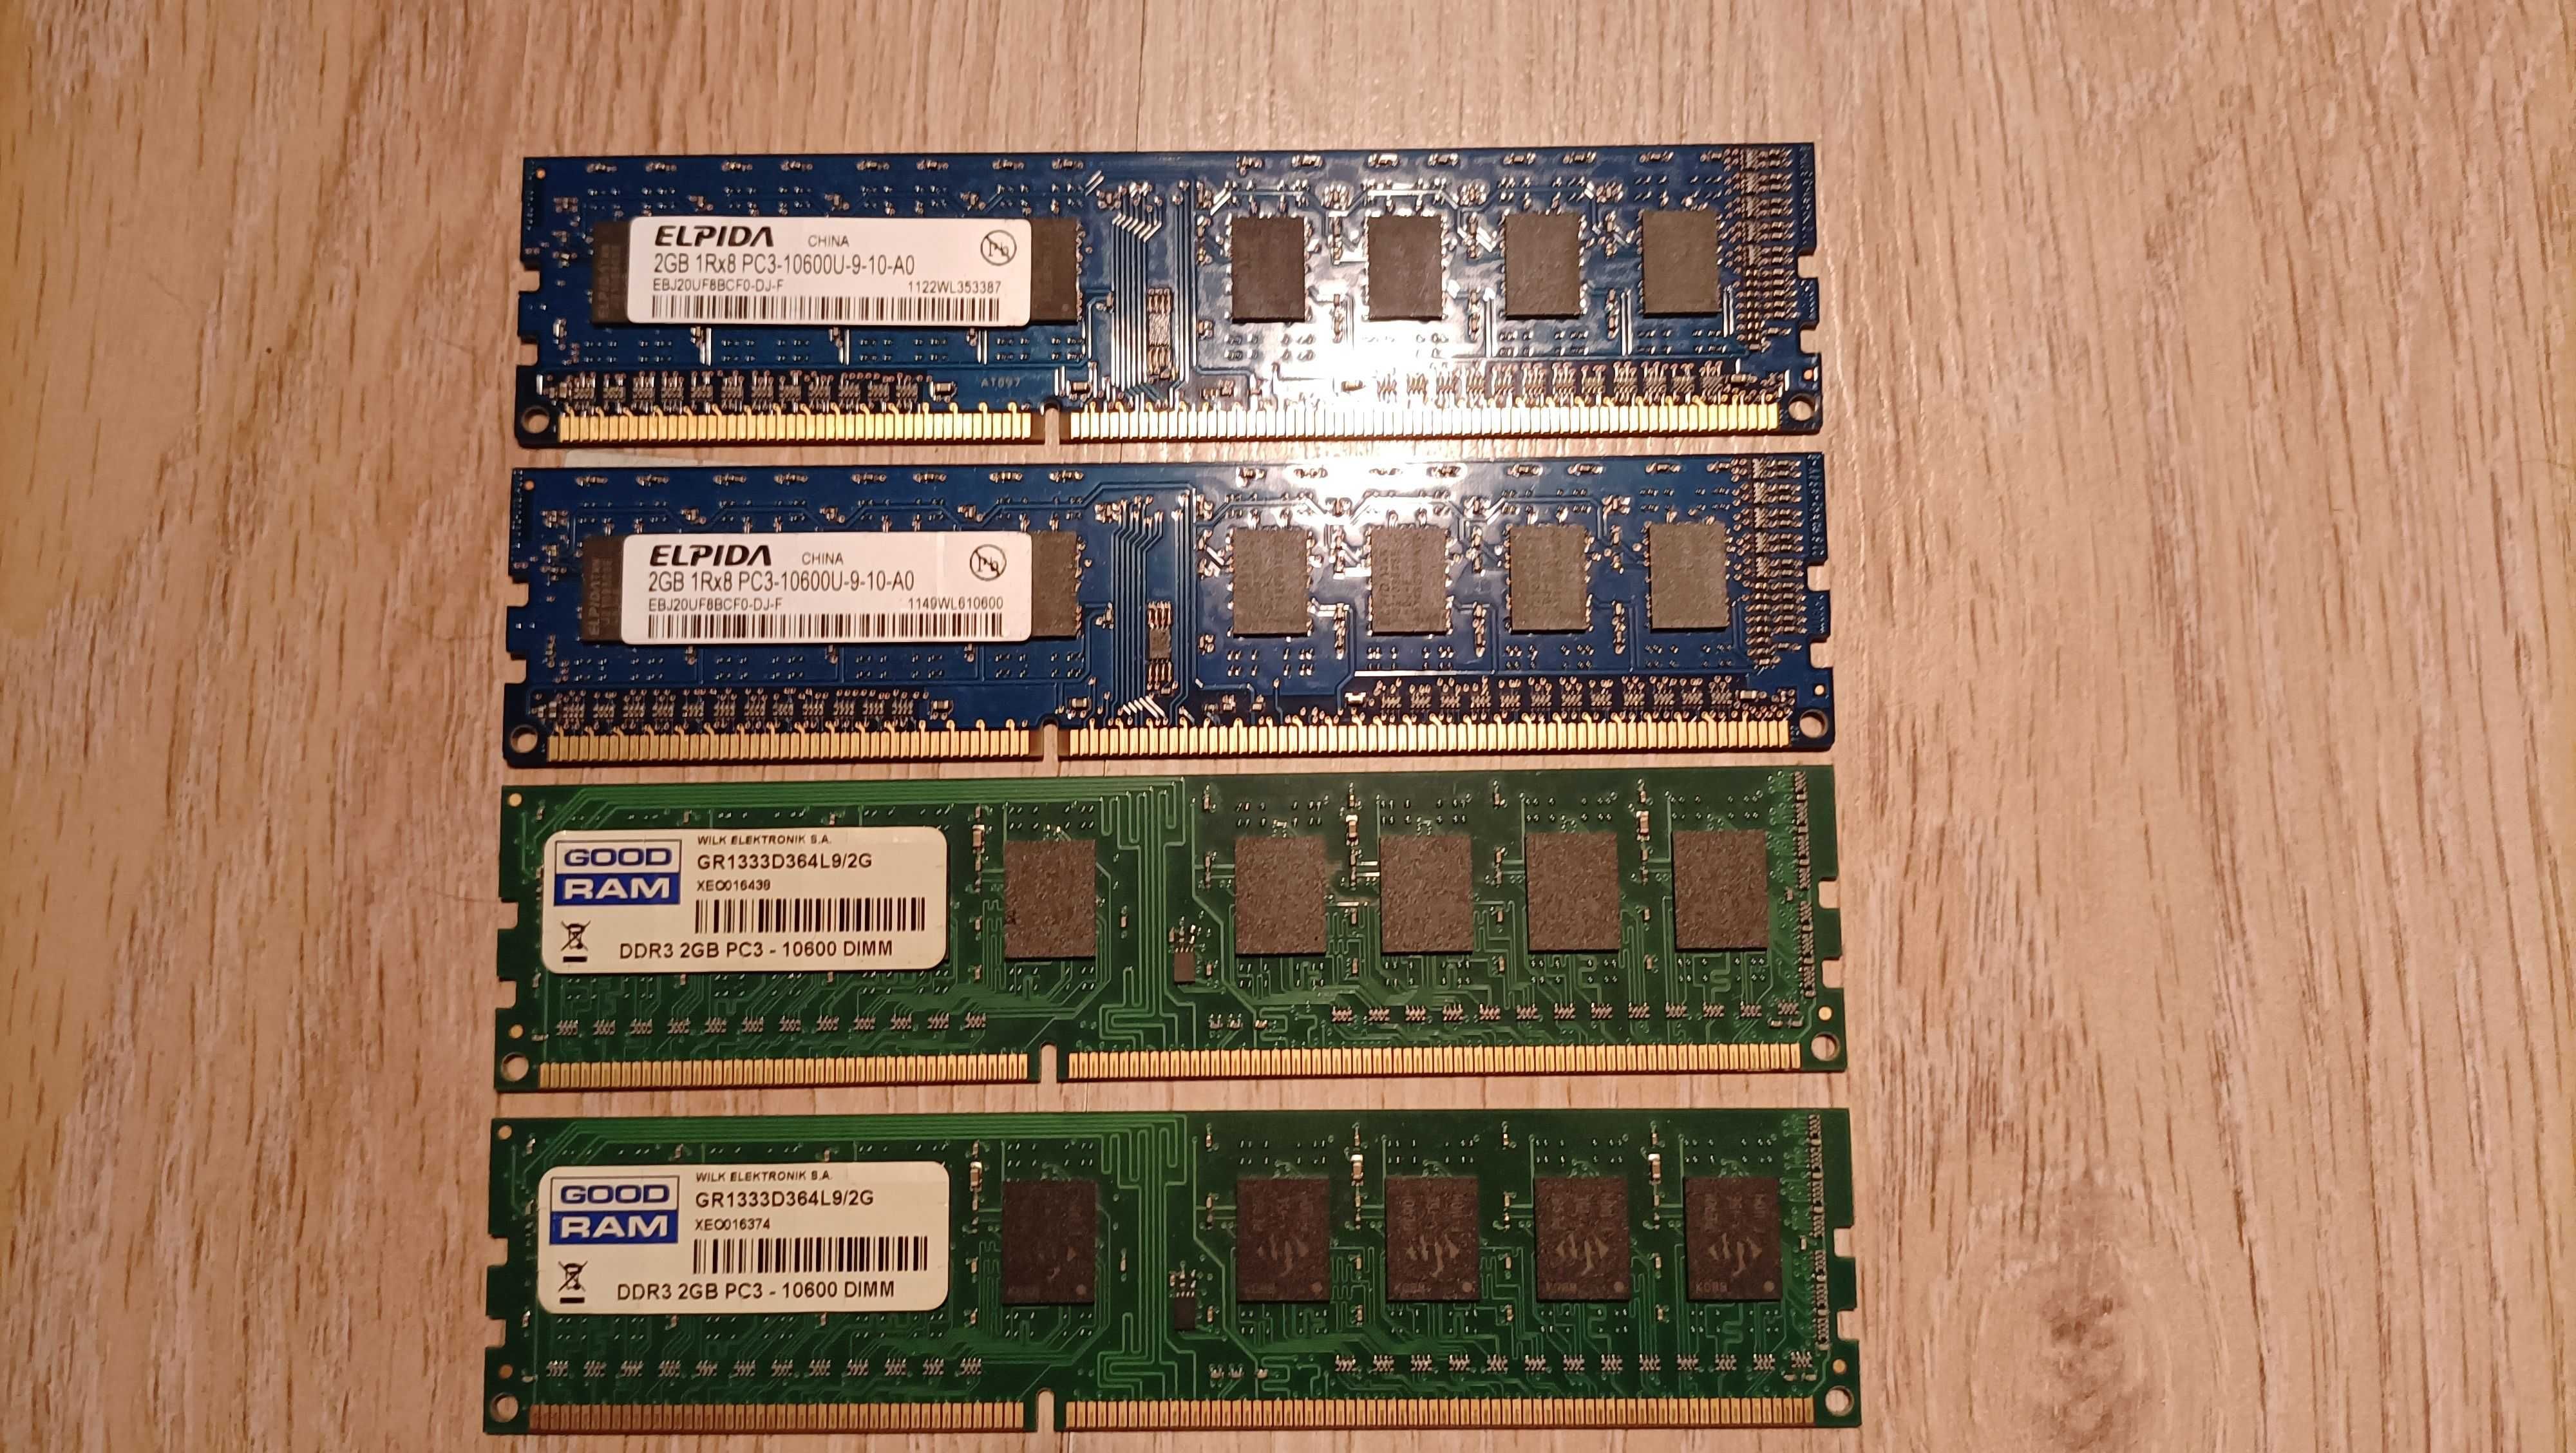 Gigabyte GA-M52LT-D3 AM3, Athlon II X3 3x3.4GHz, 4x2GB DDR3 1333